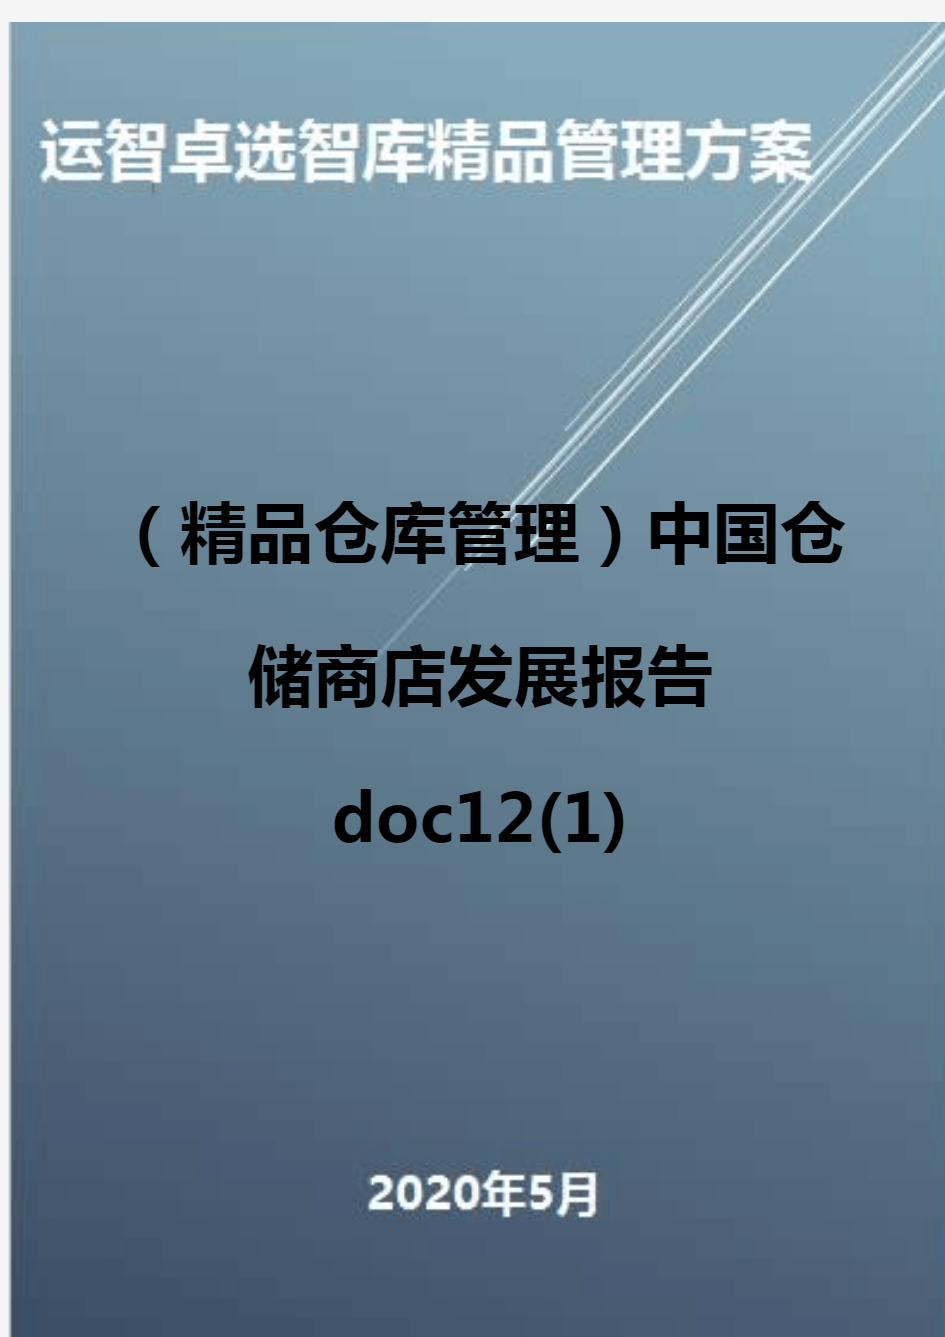 (精品仓库管理)中国仓储商店发展报告doc12(1)